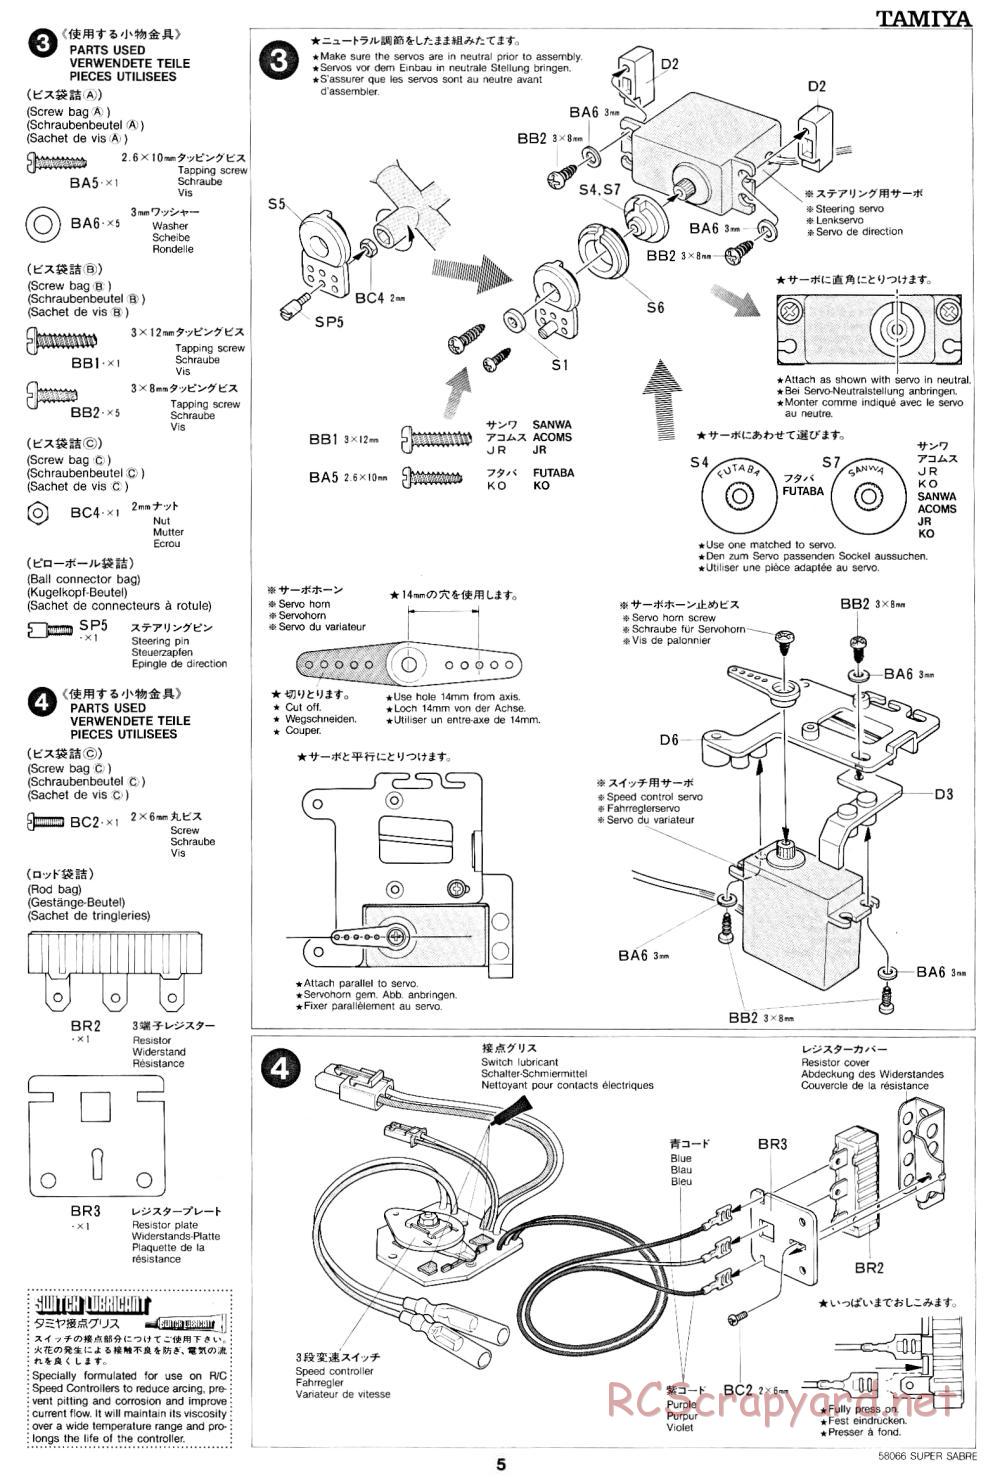 Tamiya - Super Sabre - 58066 - Manual - Page 5